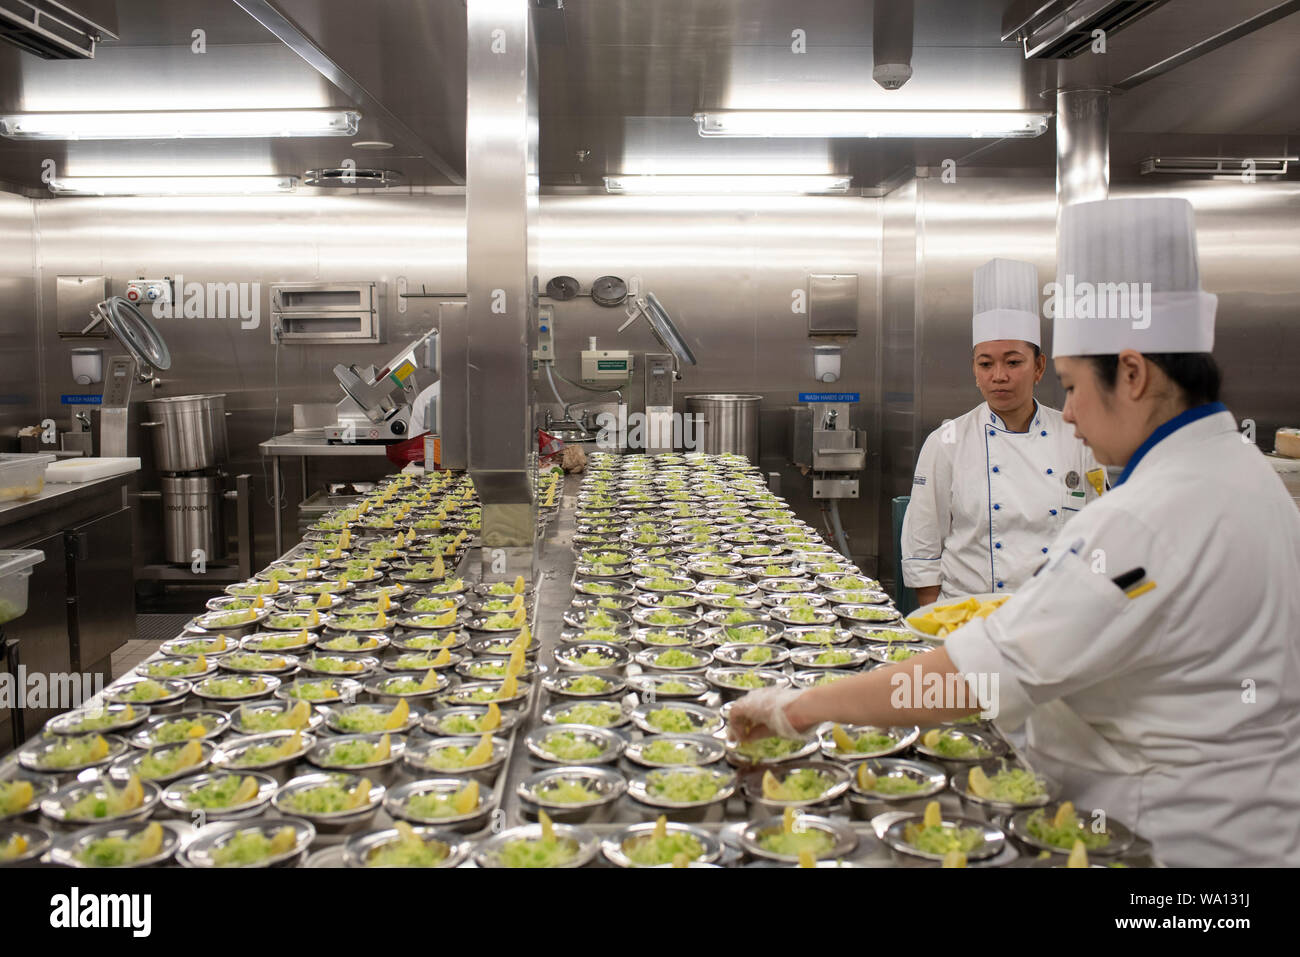 Près de 1000 personnes en cuisine travaillent à rythme onu effréné. Les antipasti, Les plats et les desserts sont préparés dans des endroits différents. Foto Stock